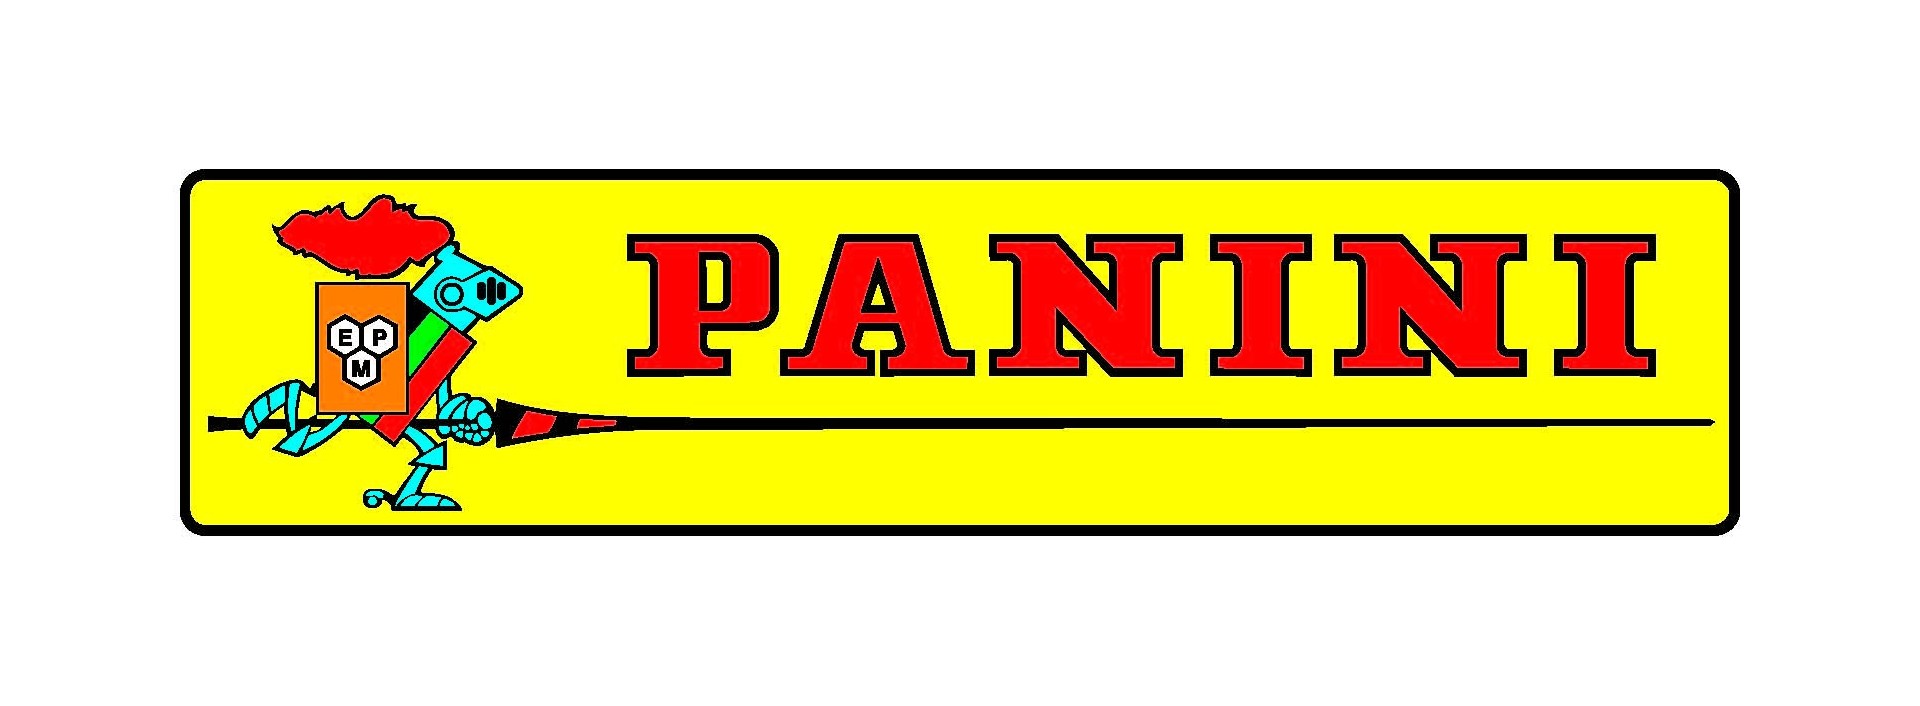 Cromos de fútbol de la editorial Panini